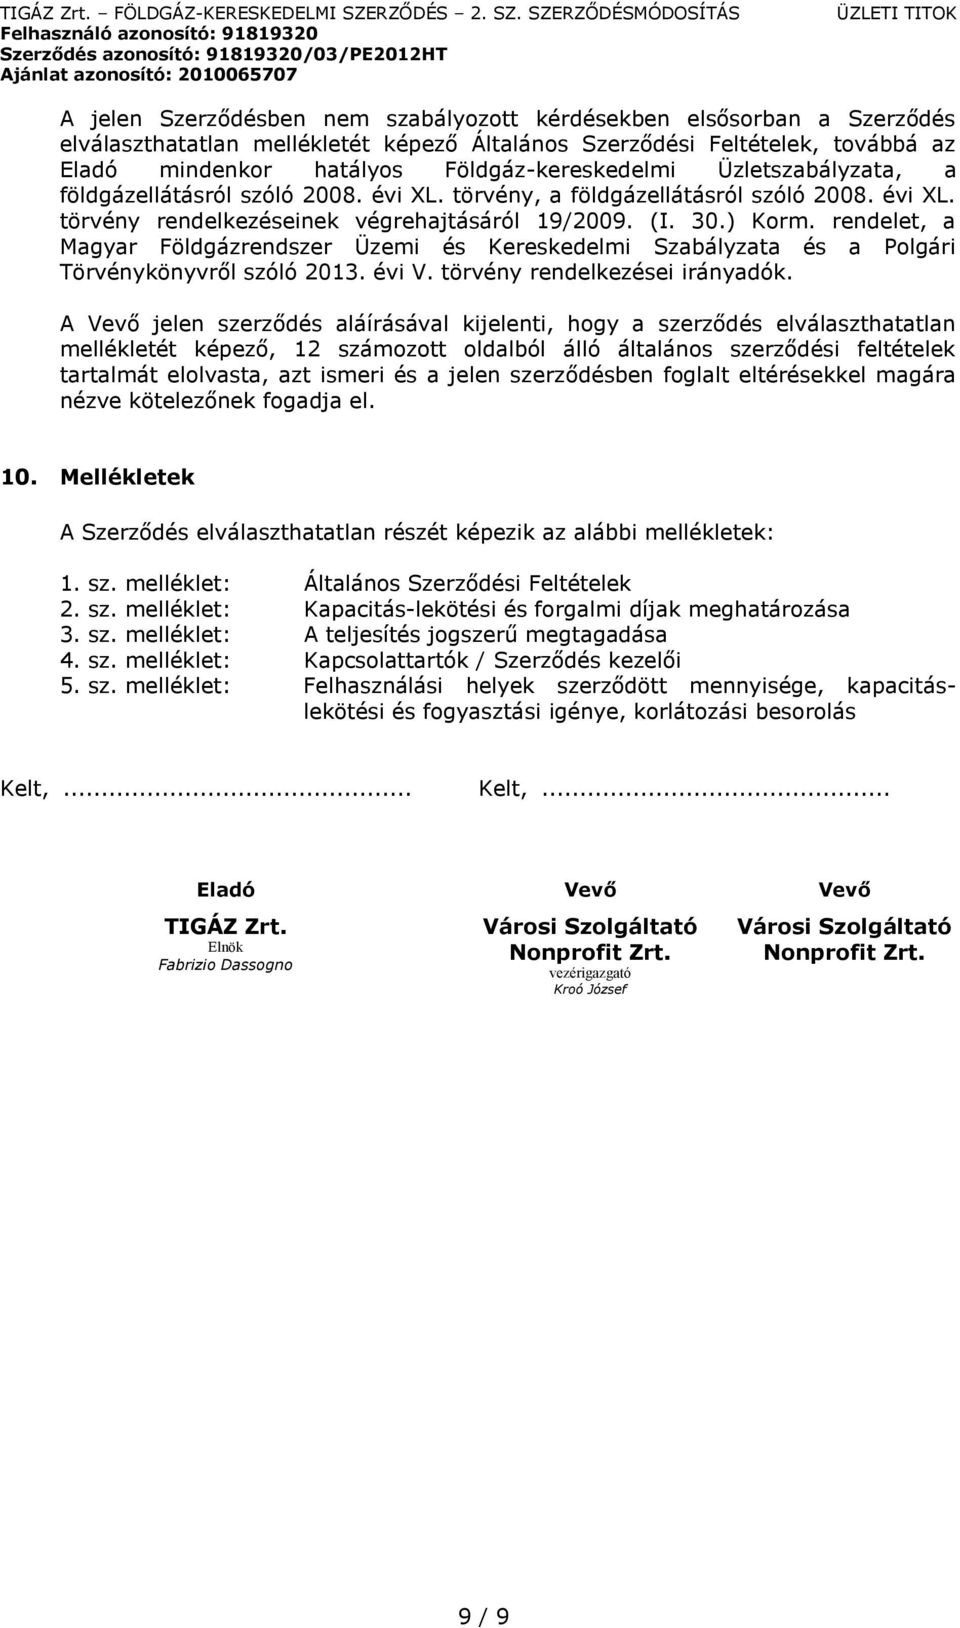 rendelet, a Magyar Földgázrendszer Üzemi és Kereskedelmi Szabályzata és a Polgári Törvénykönyvről szóló 2013. évi V. törvény rendelkezései irányadók.